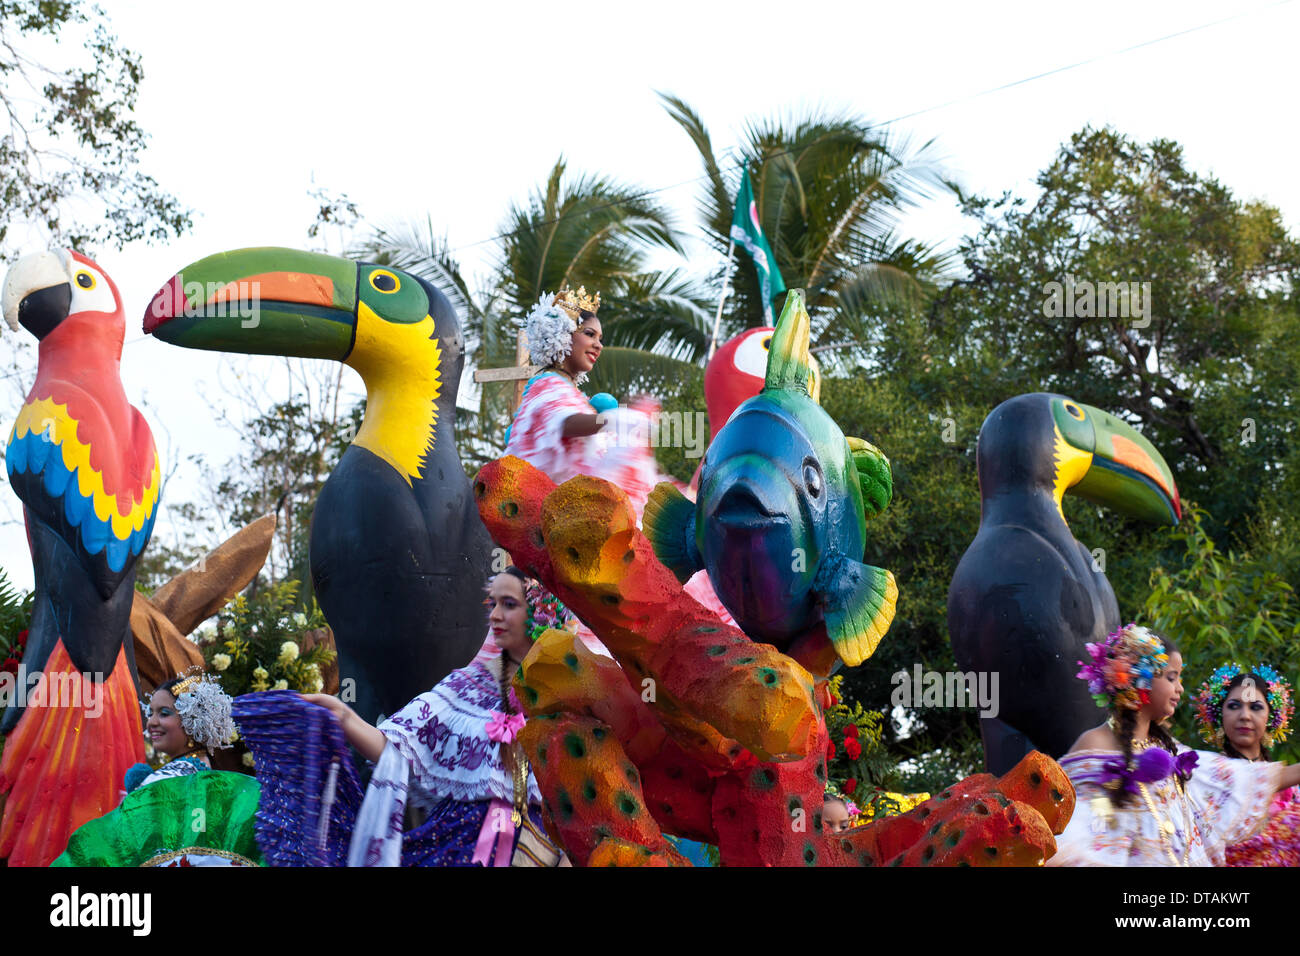 From the annual festival 'Desfile mil de polleras' (Thousand Polleras) in Las Tablas, Los Santos Province, Republic of Panama. Stock Photo